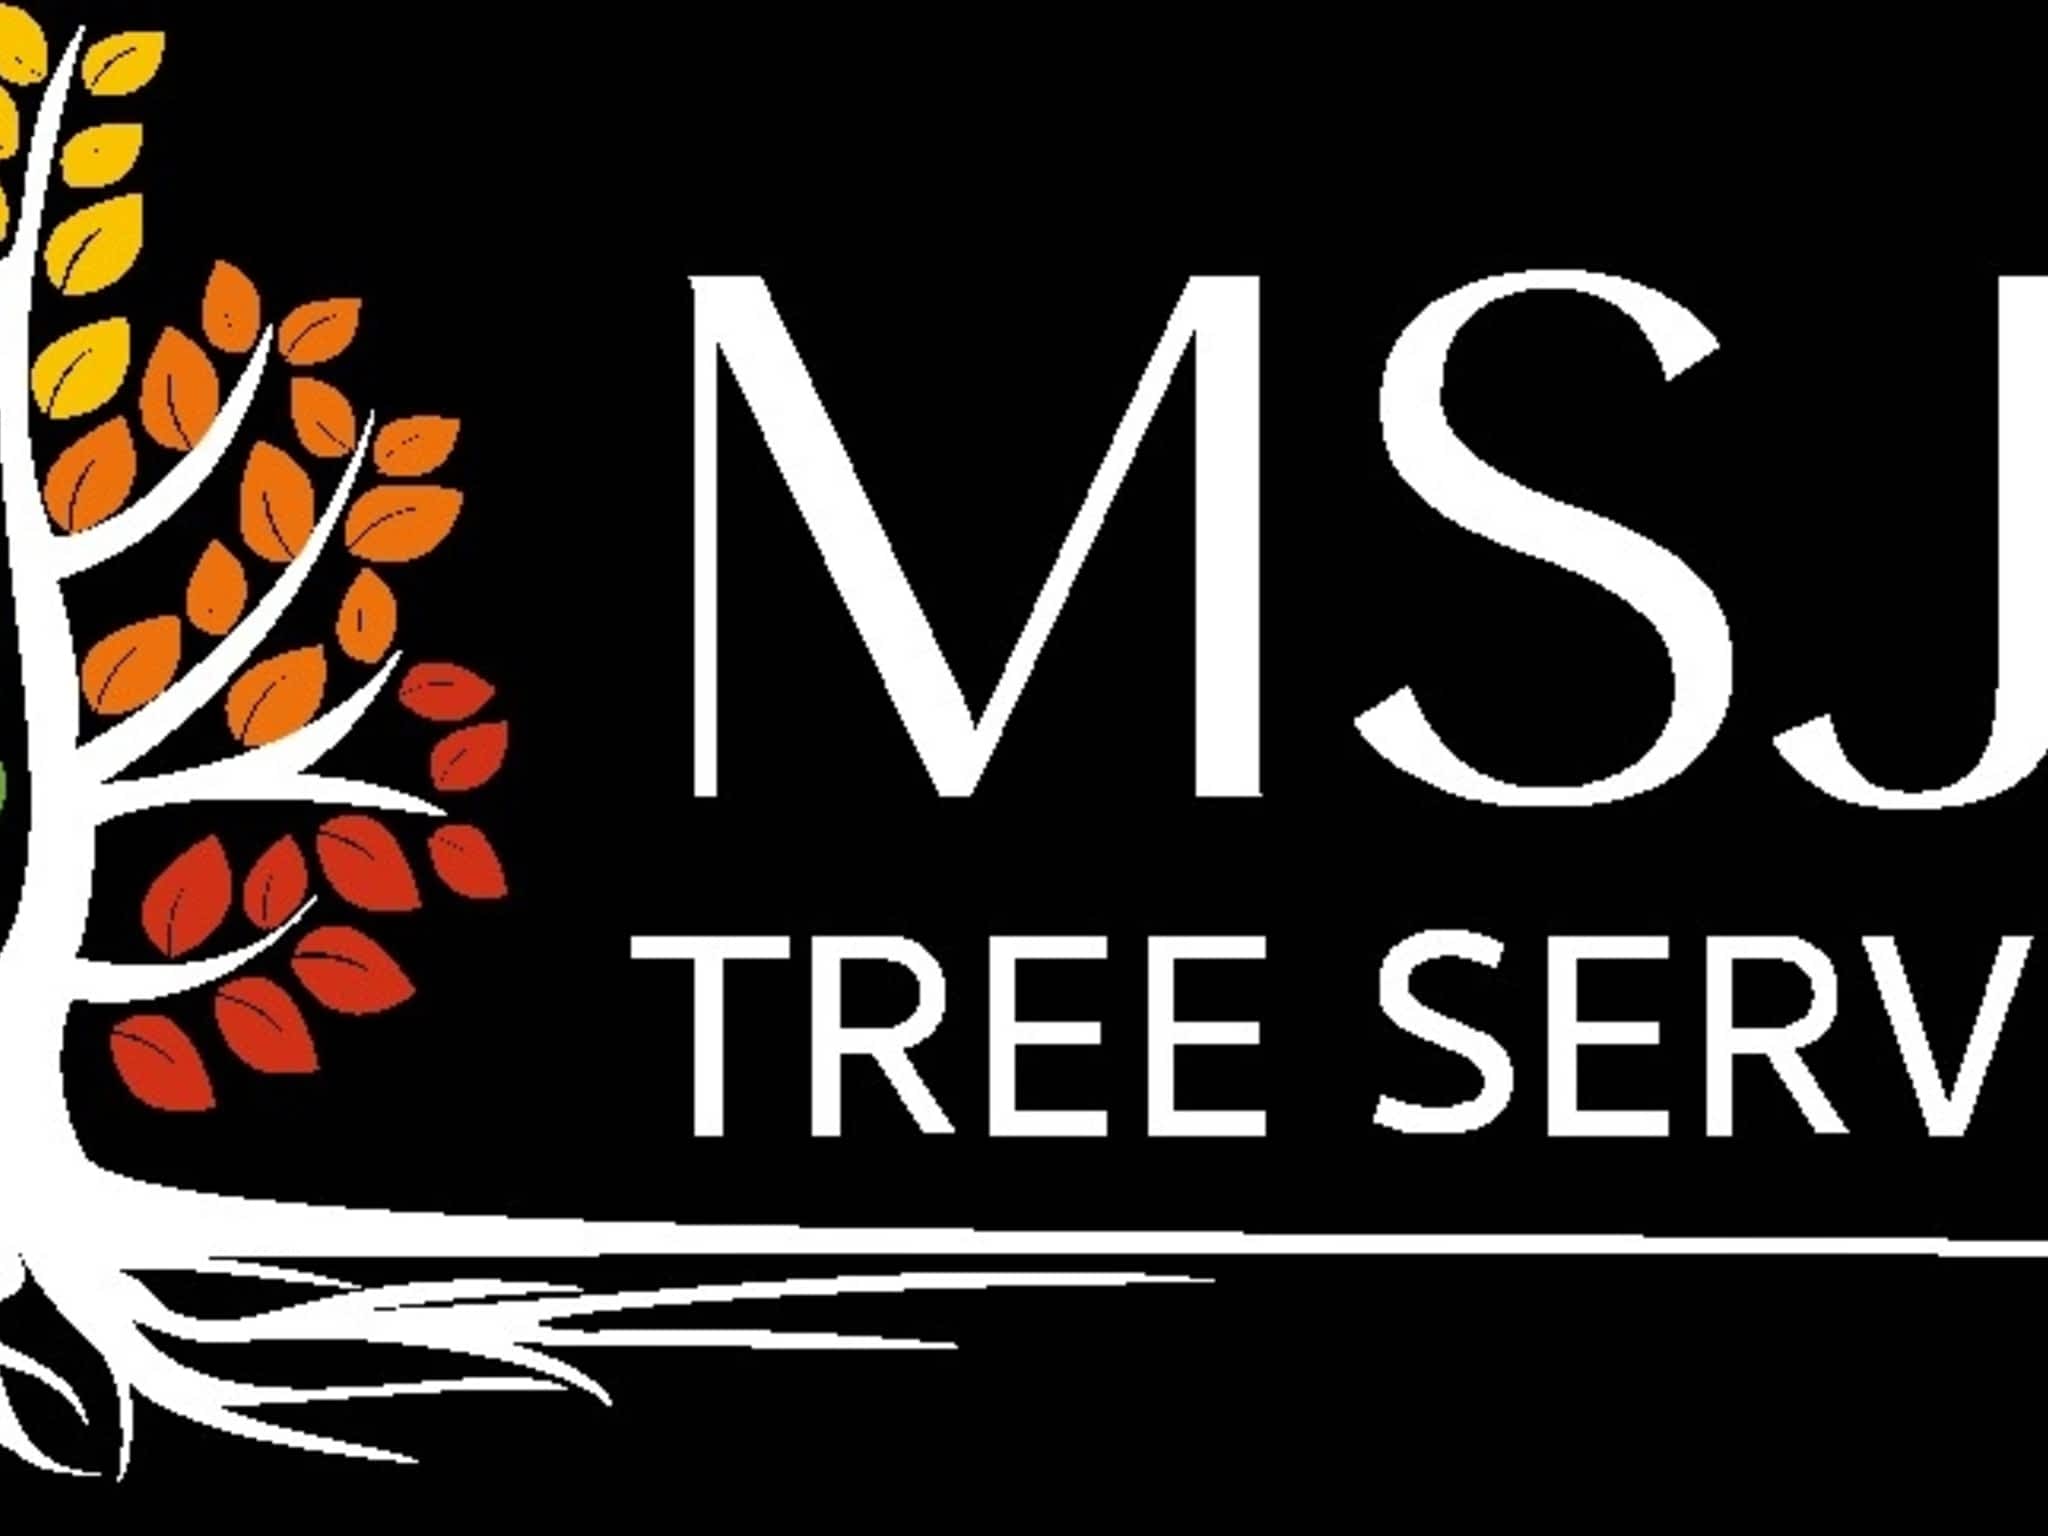 photo MSJD Tree Services